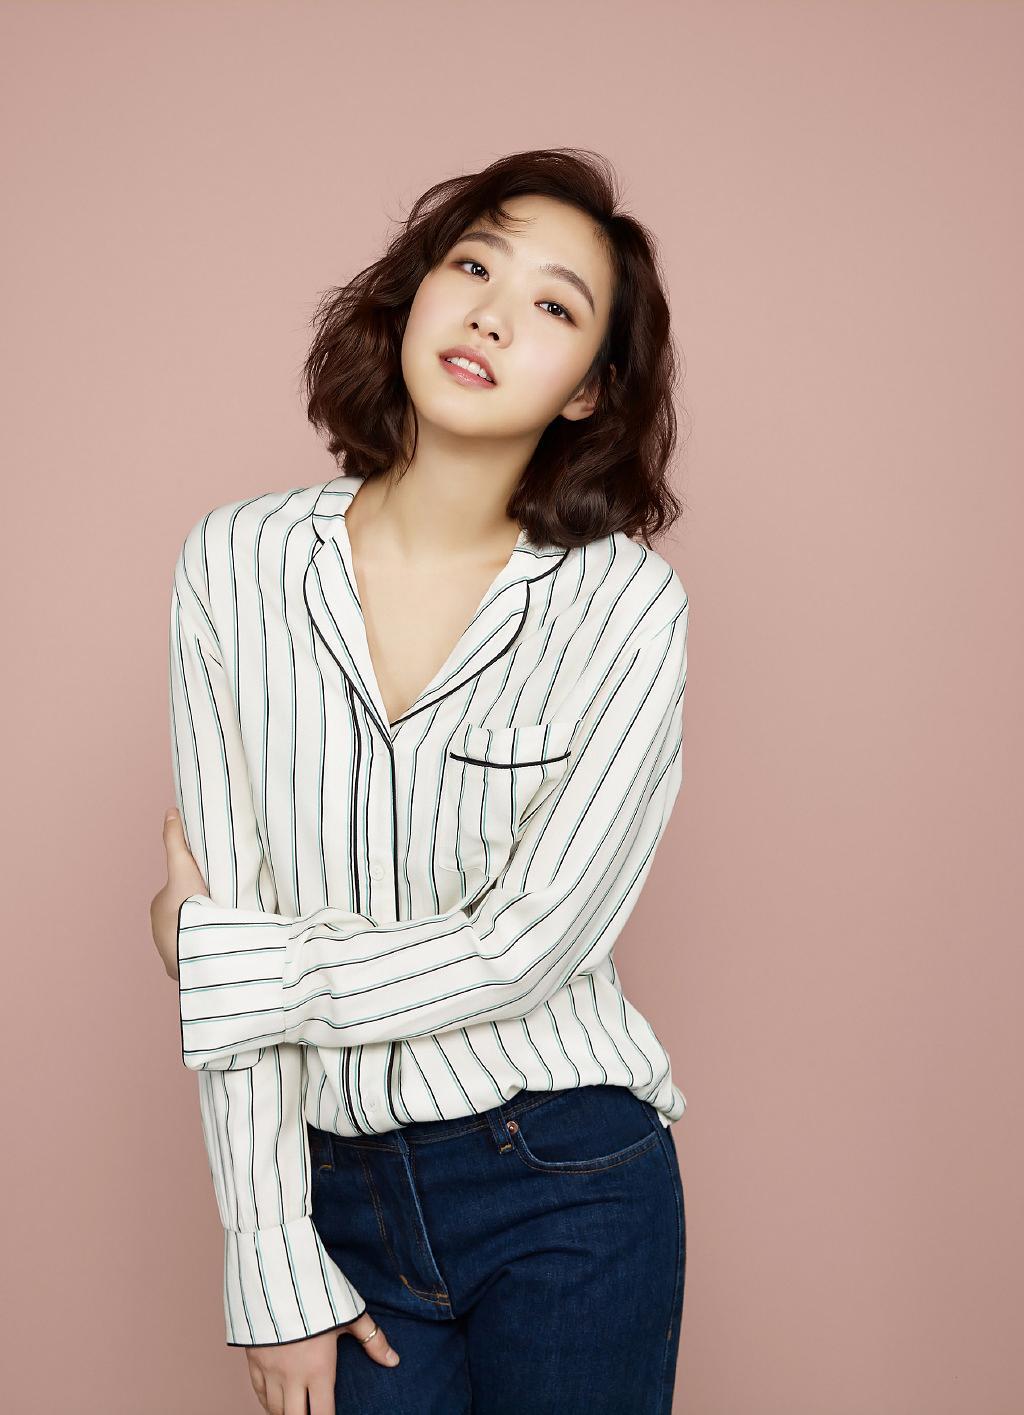 Ảnh thẻ thời đi học của Kim Go Eun: Mặt Vline, mũi cao, môi chúm chím - Ảnh 6